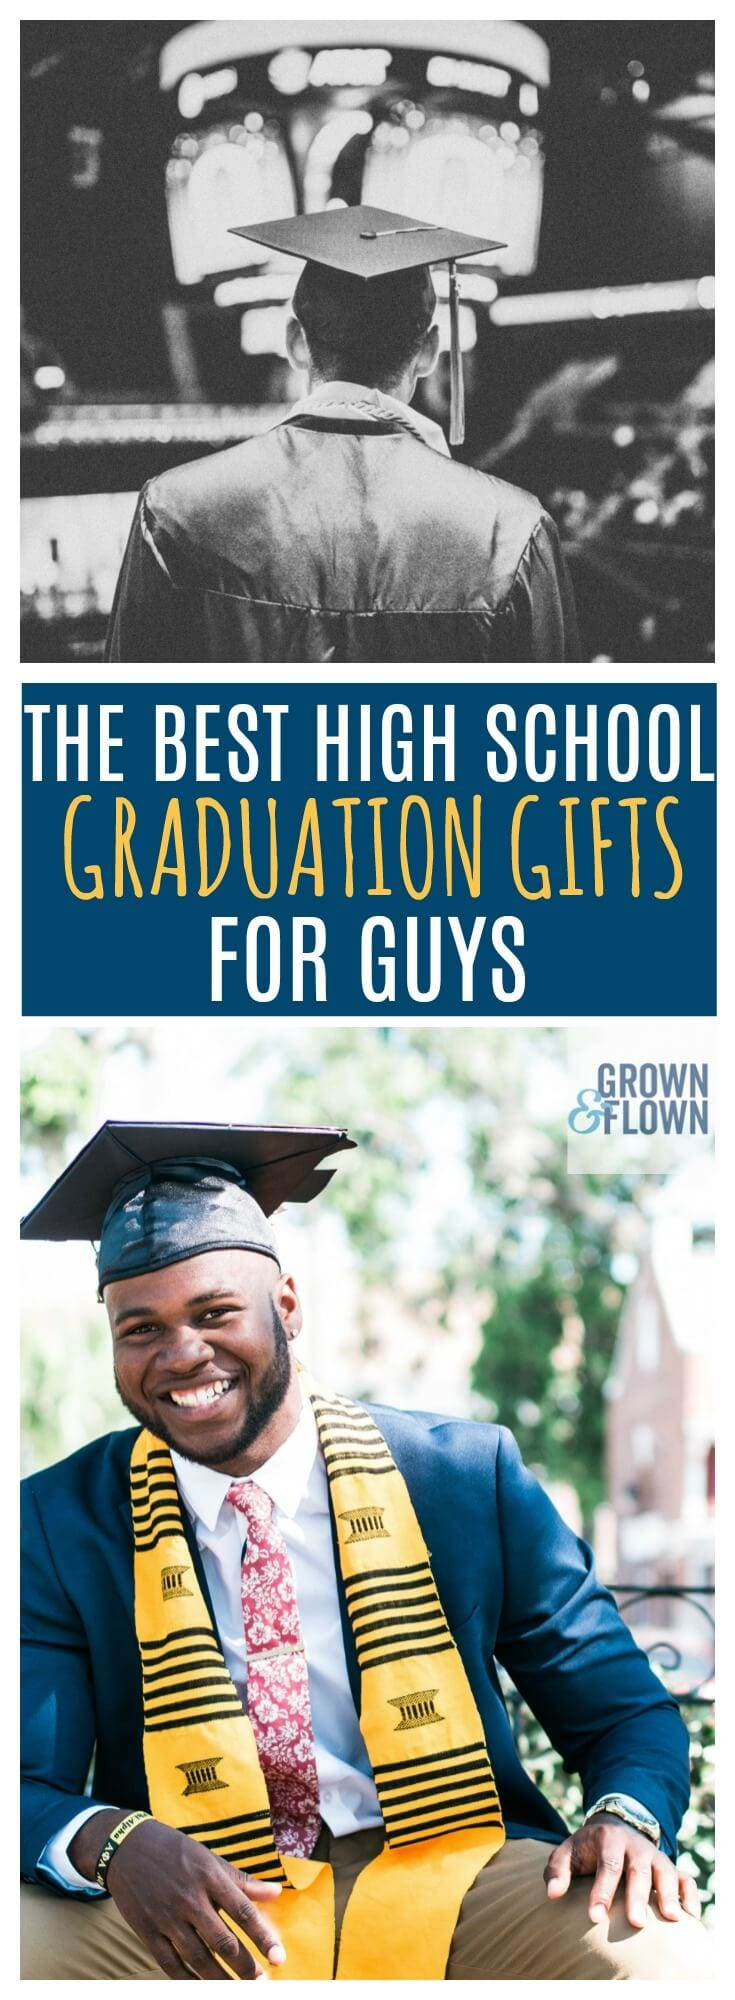 Gift Ideas For High School Graduation Boy
 2020 High School Graduation Gifts for Guys They Will Love